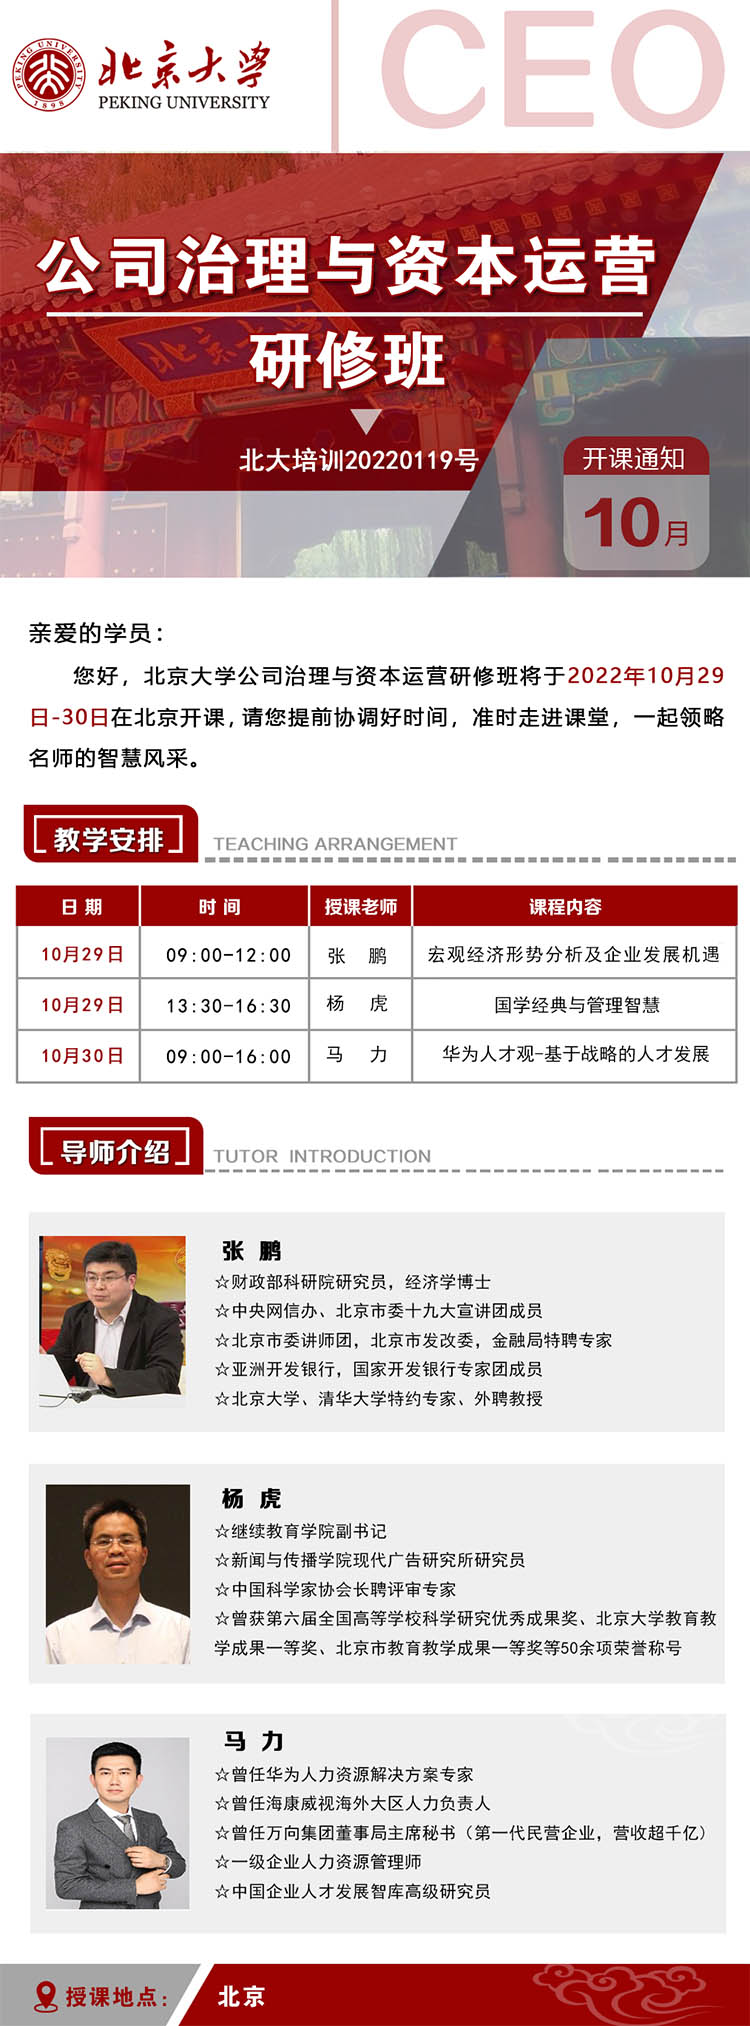 10月29-30日北京大学公司治理创新力研修班课程安排